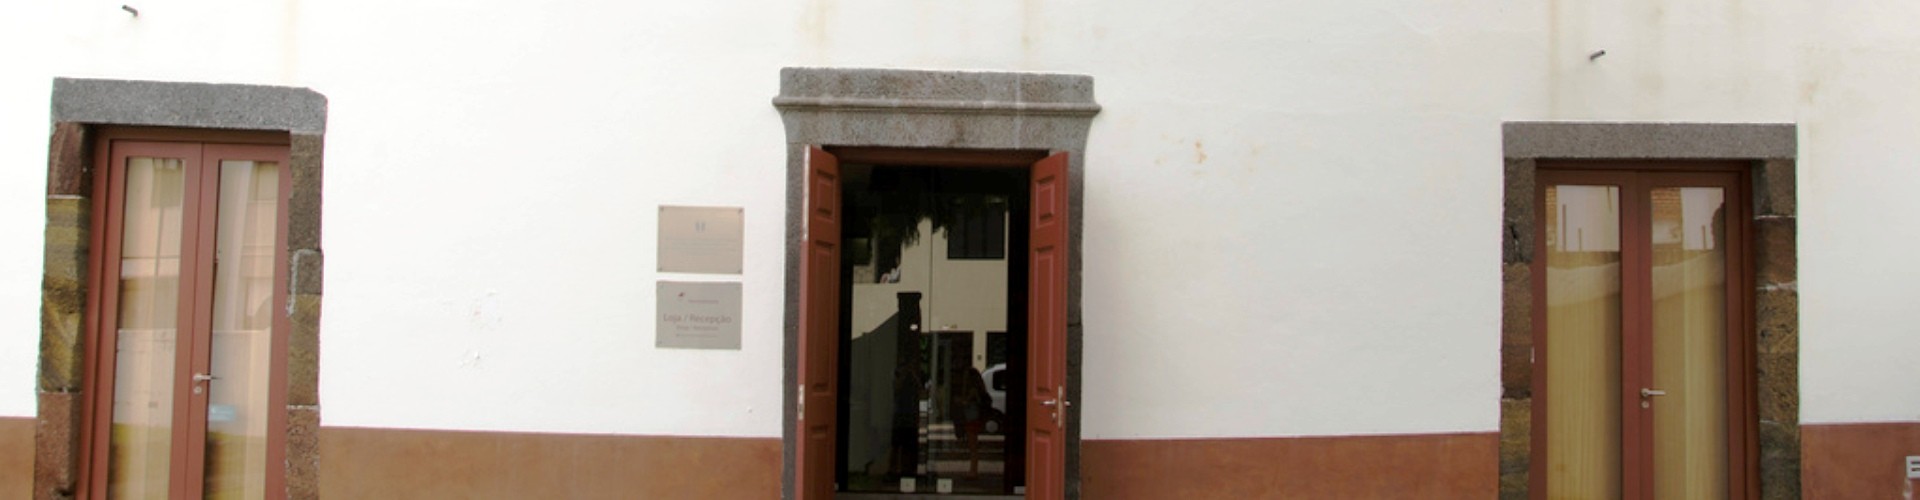 Museu Solar do Ribeirinho Museum Centre, Machico, Madeira